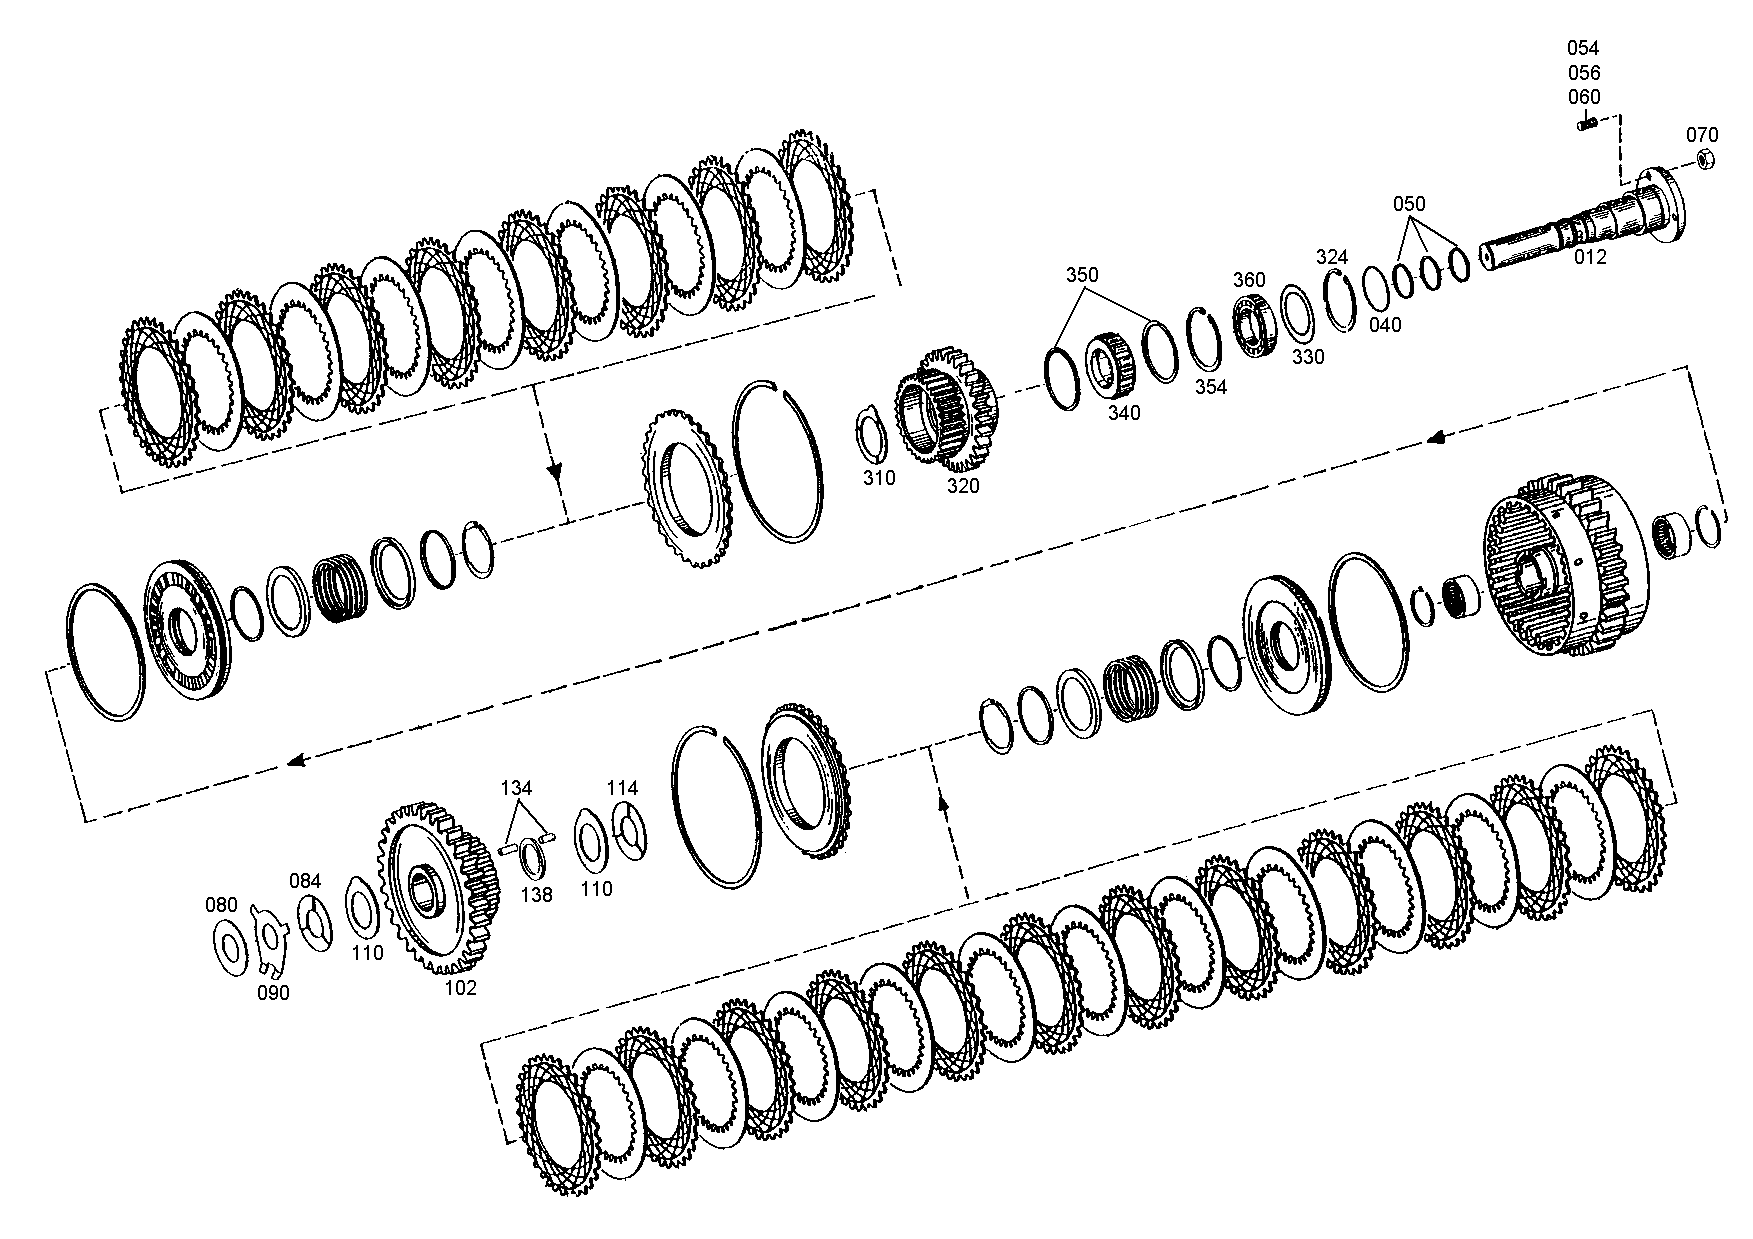 drawing for NACCO-IRV 1390850 - ANGLE RING (figure 1)